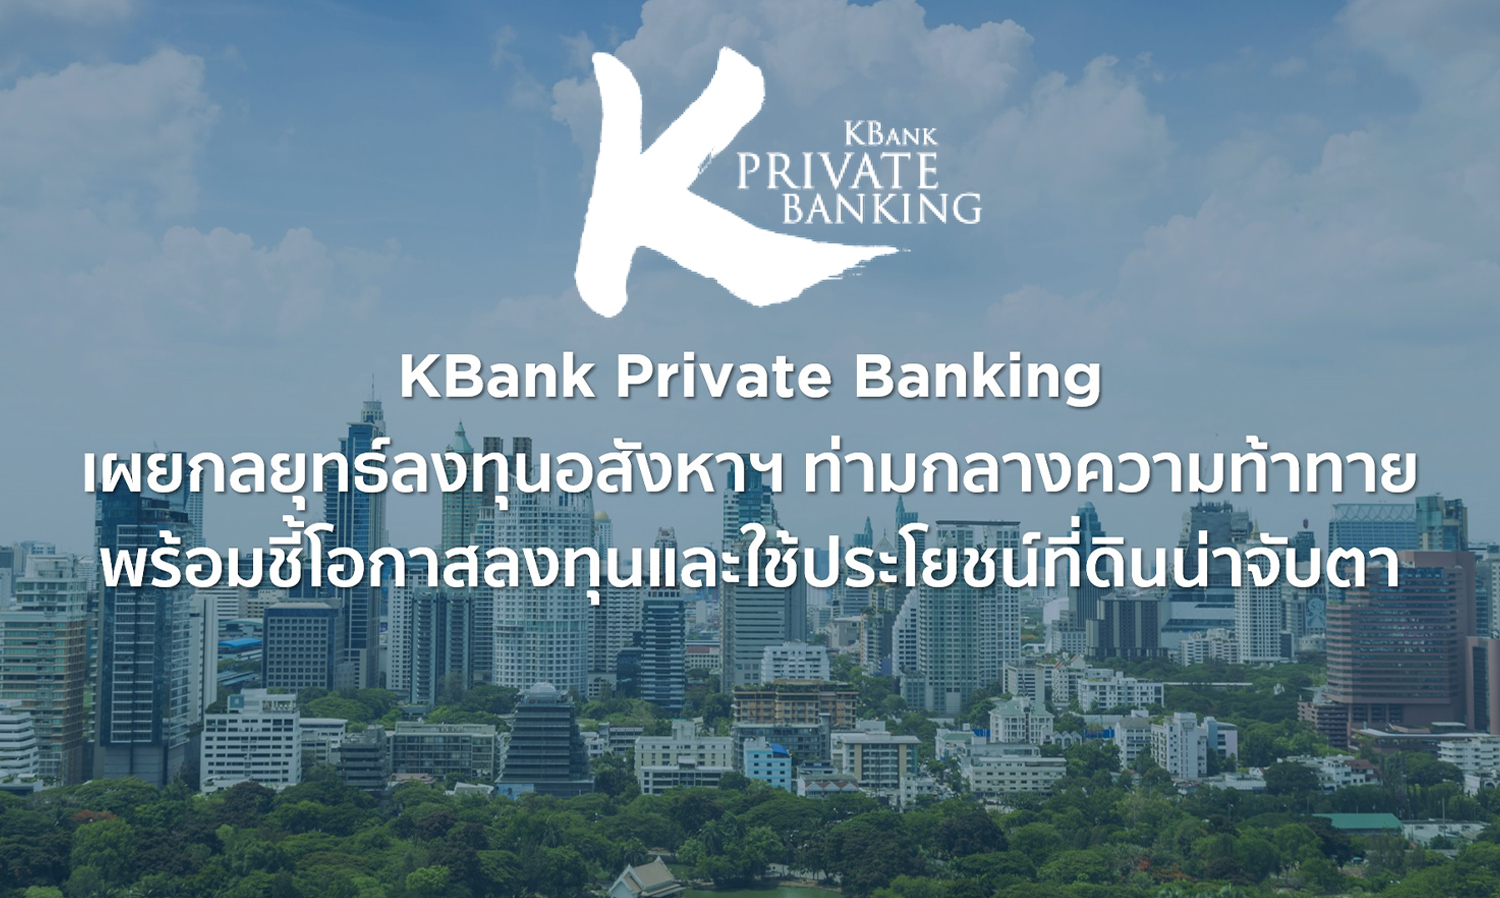 kbank-private-banking-เผยกลยุทธ์ลงทุนอสังหาฯ-ท่า-